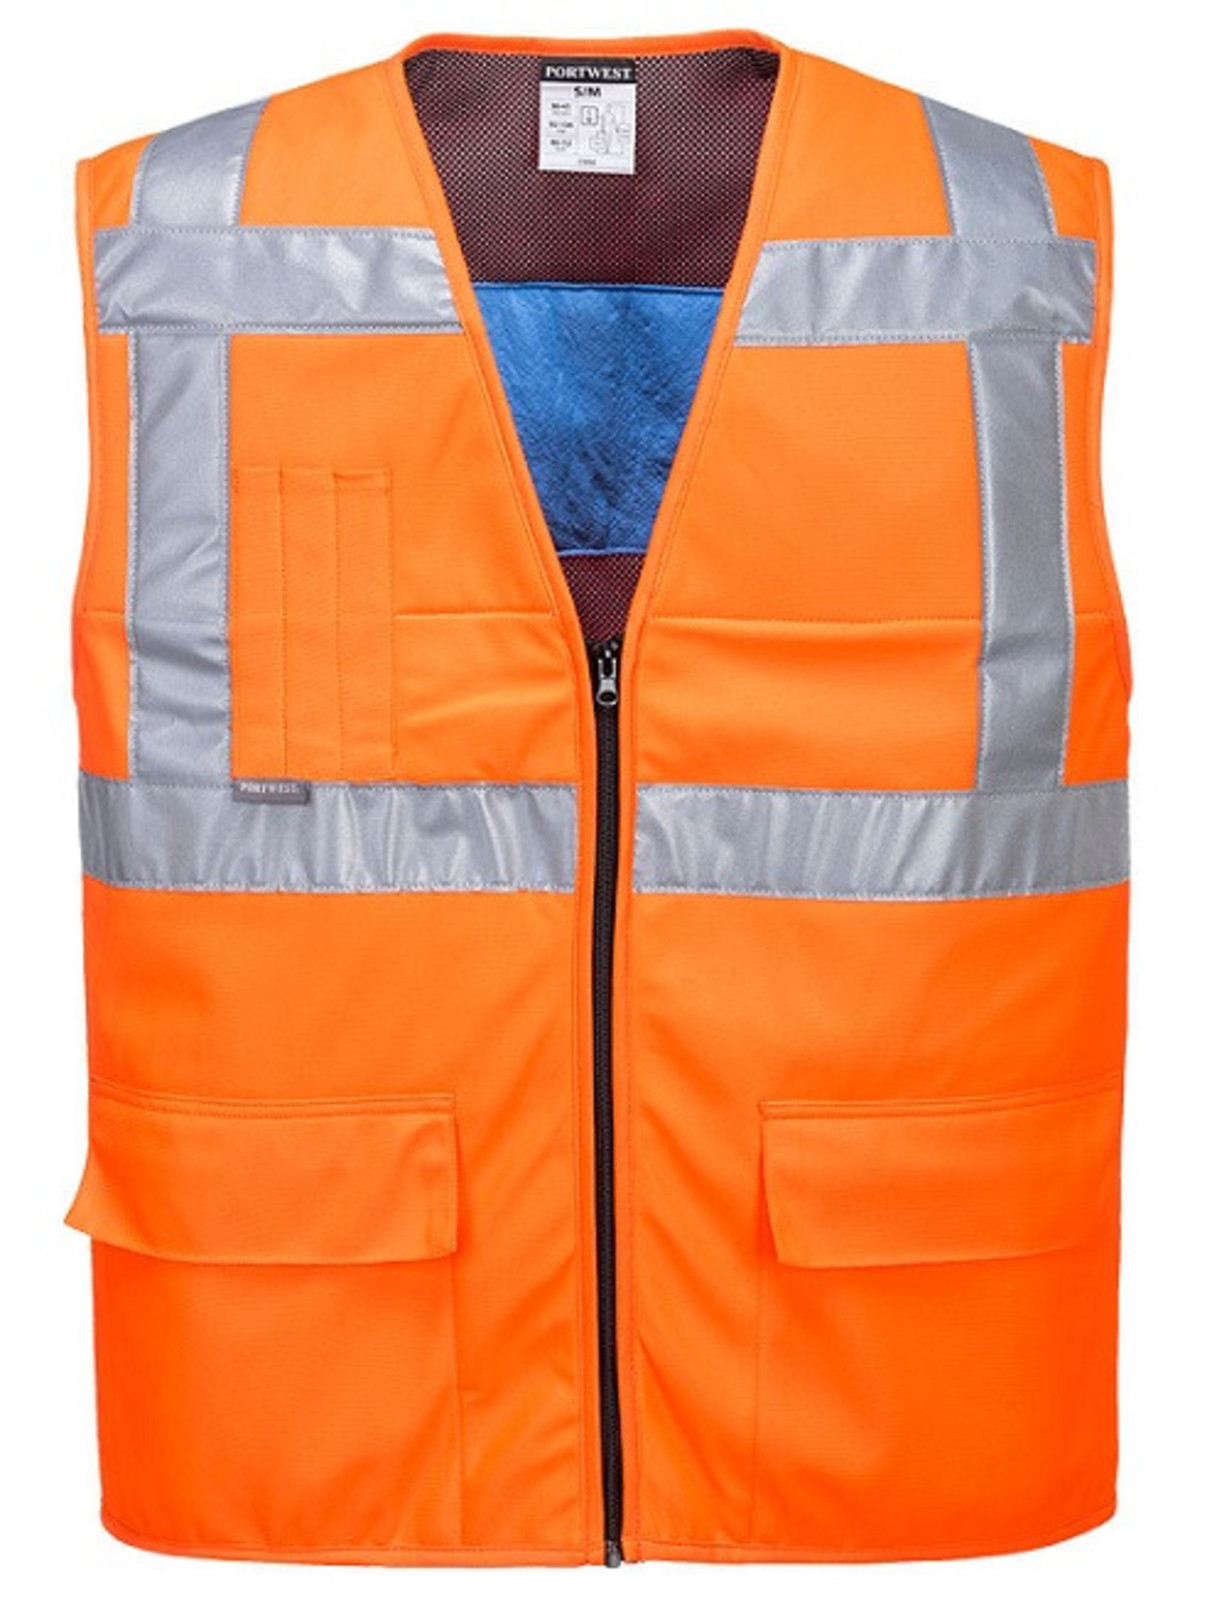 Chladiaca reflexná vesta Portwest CV02  - veľkosť: S/M, farba: oranžová